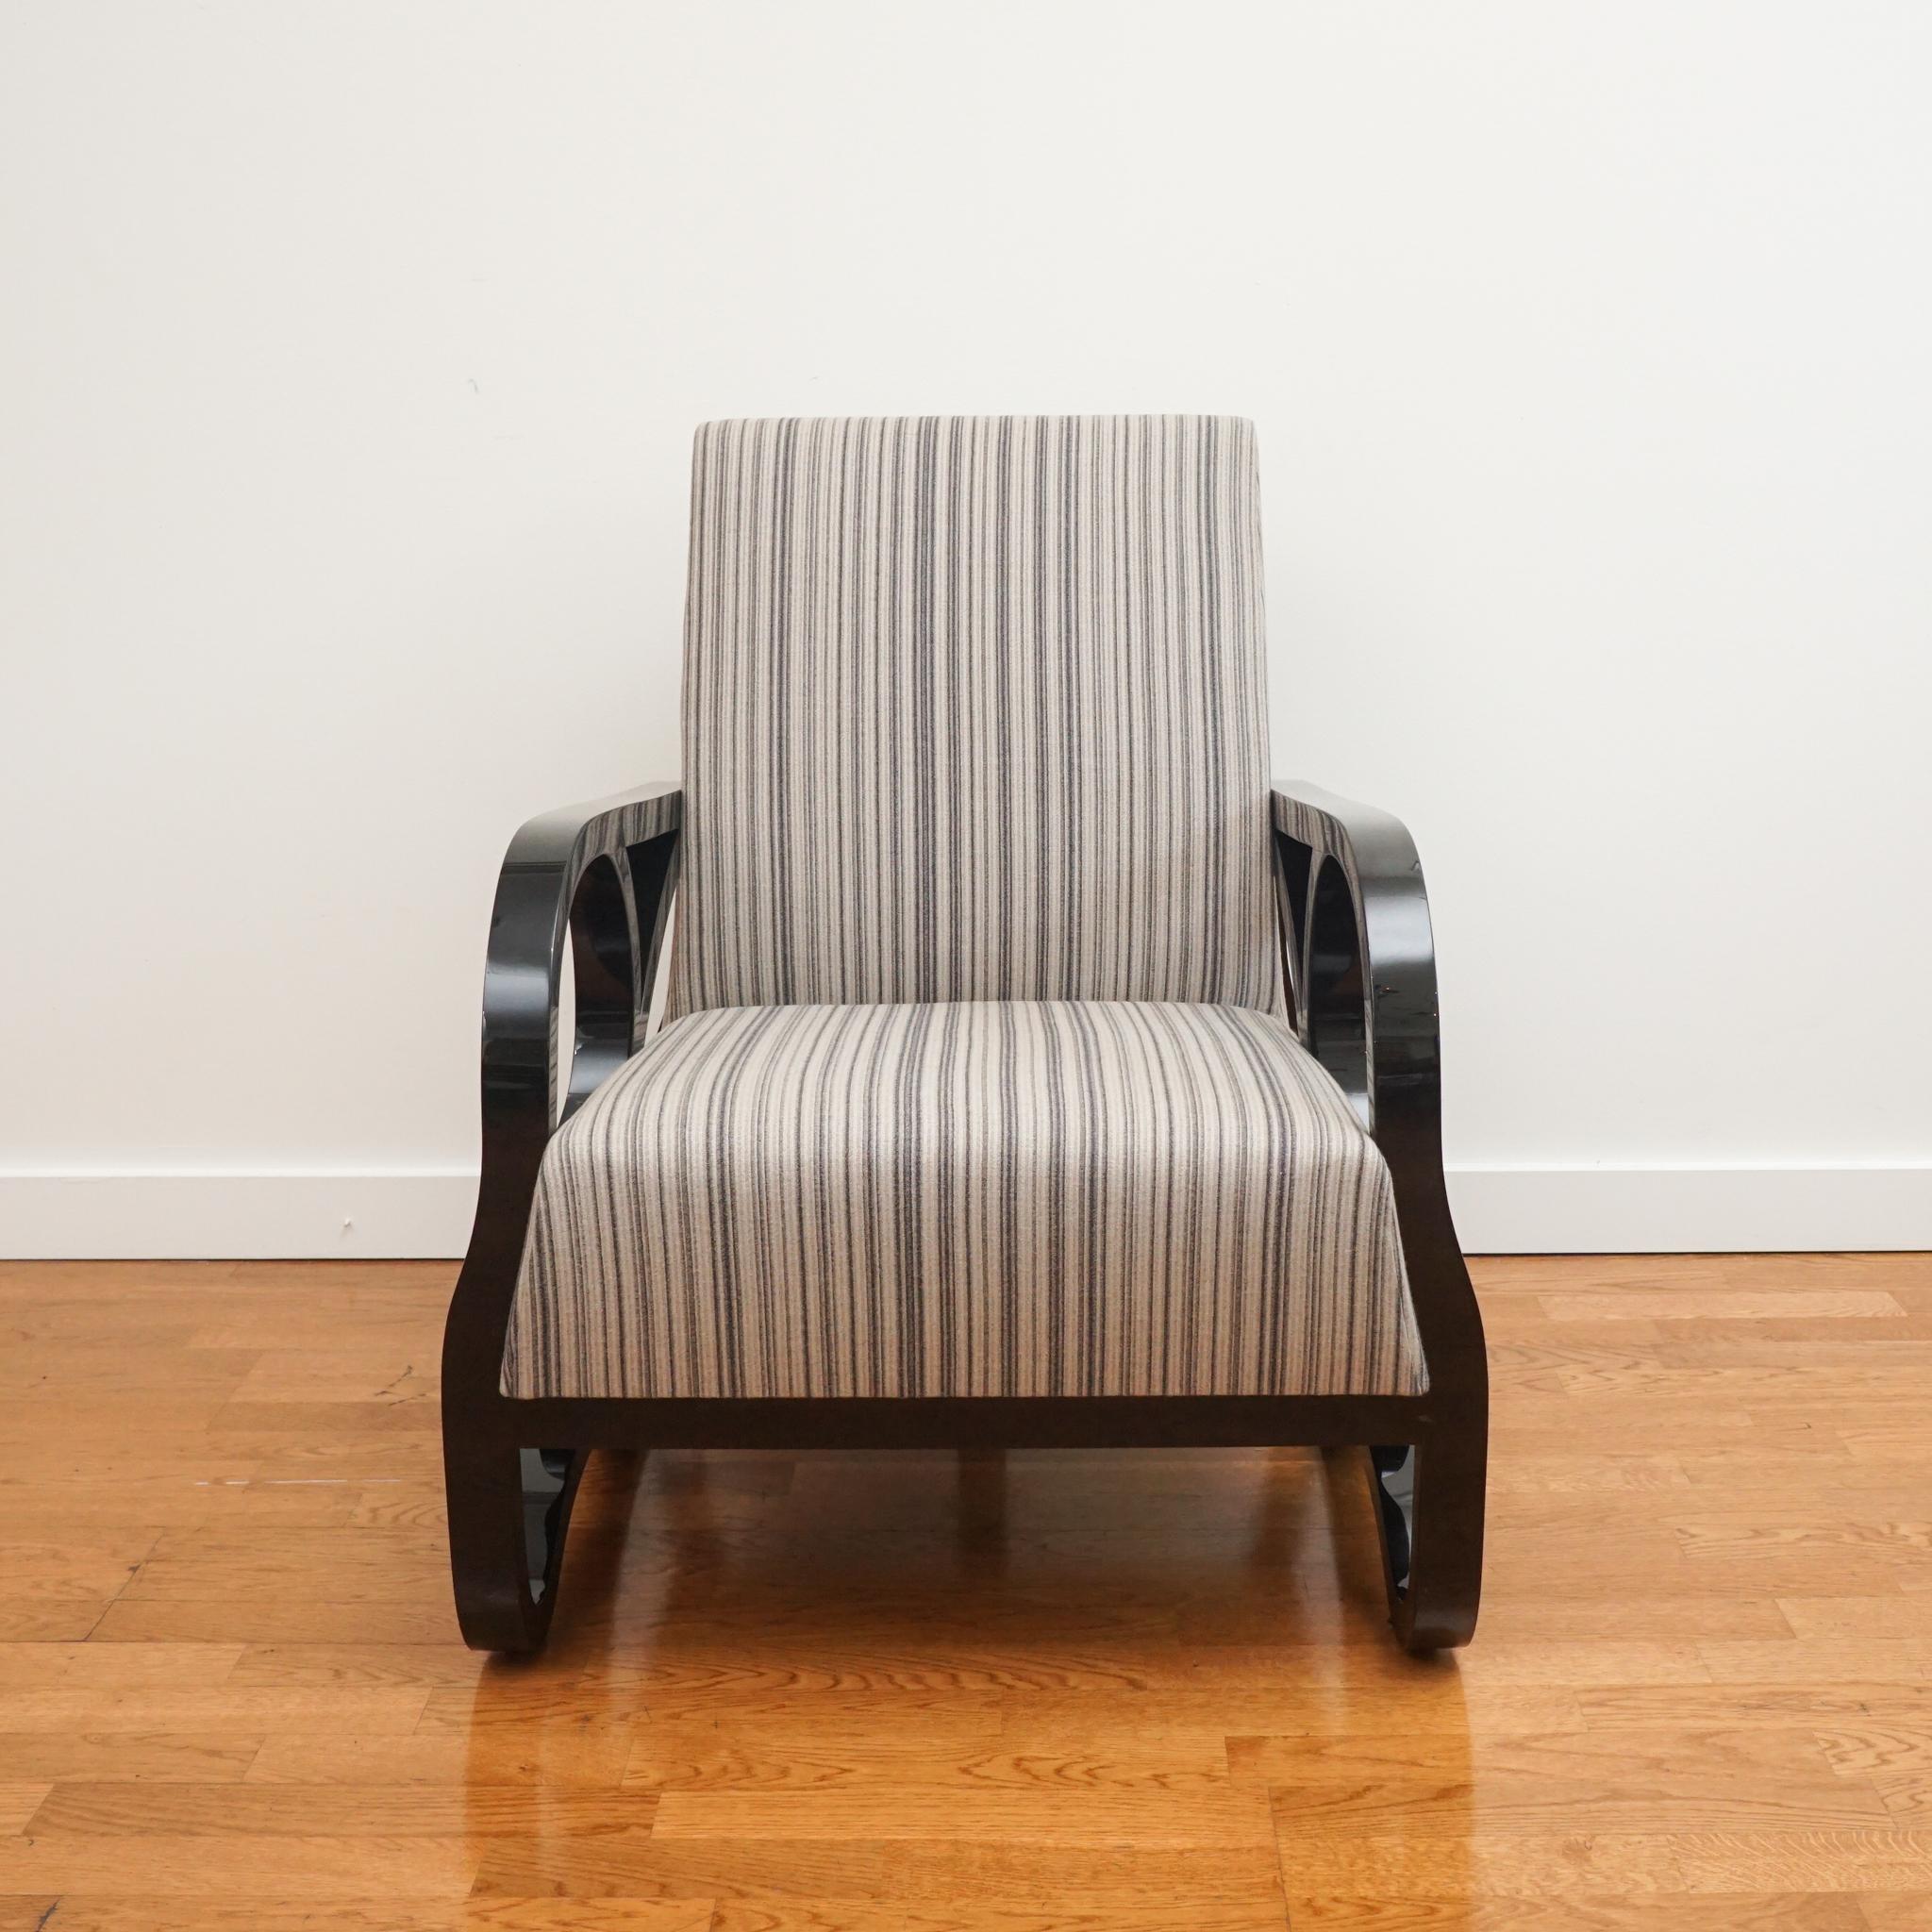 Des courbes complexes et des finitions luxueuses font de cette chaise longue Juniper un objet unique en son genre. S'inspirant de Coco Chanel et du Paris des années 1930, la finition laquée noire est associée à un luxueux tissu à rayures Fortuny